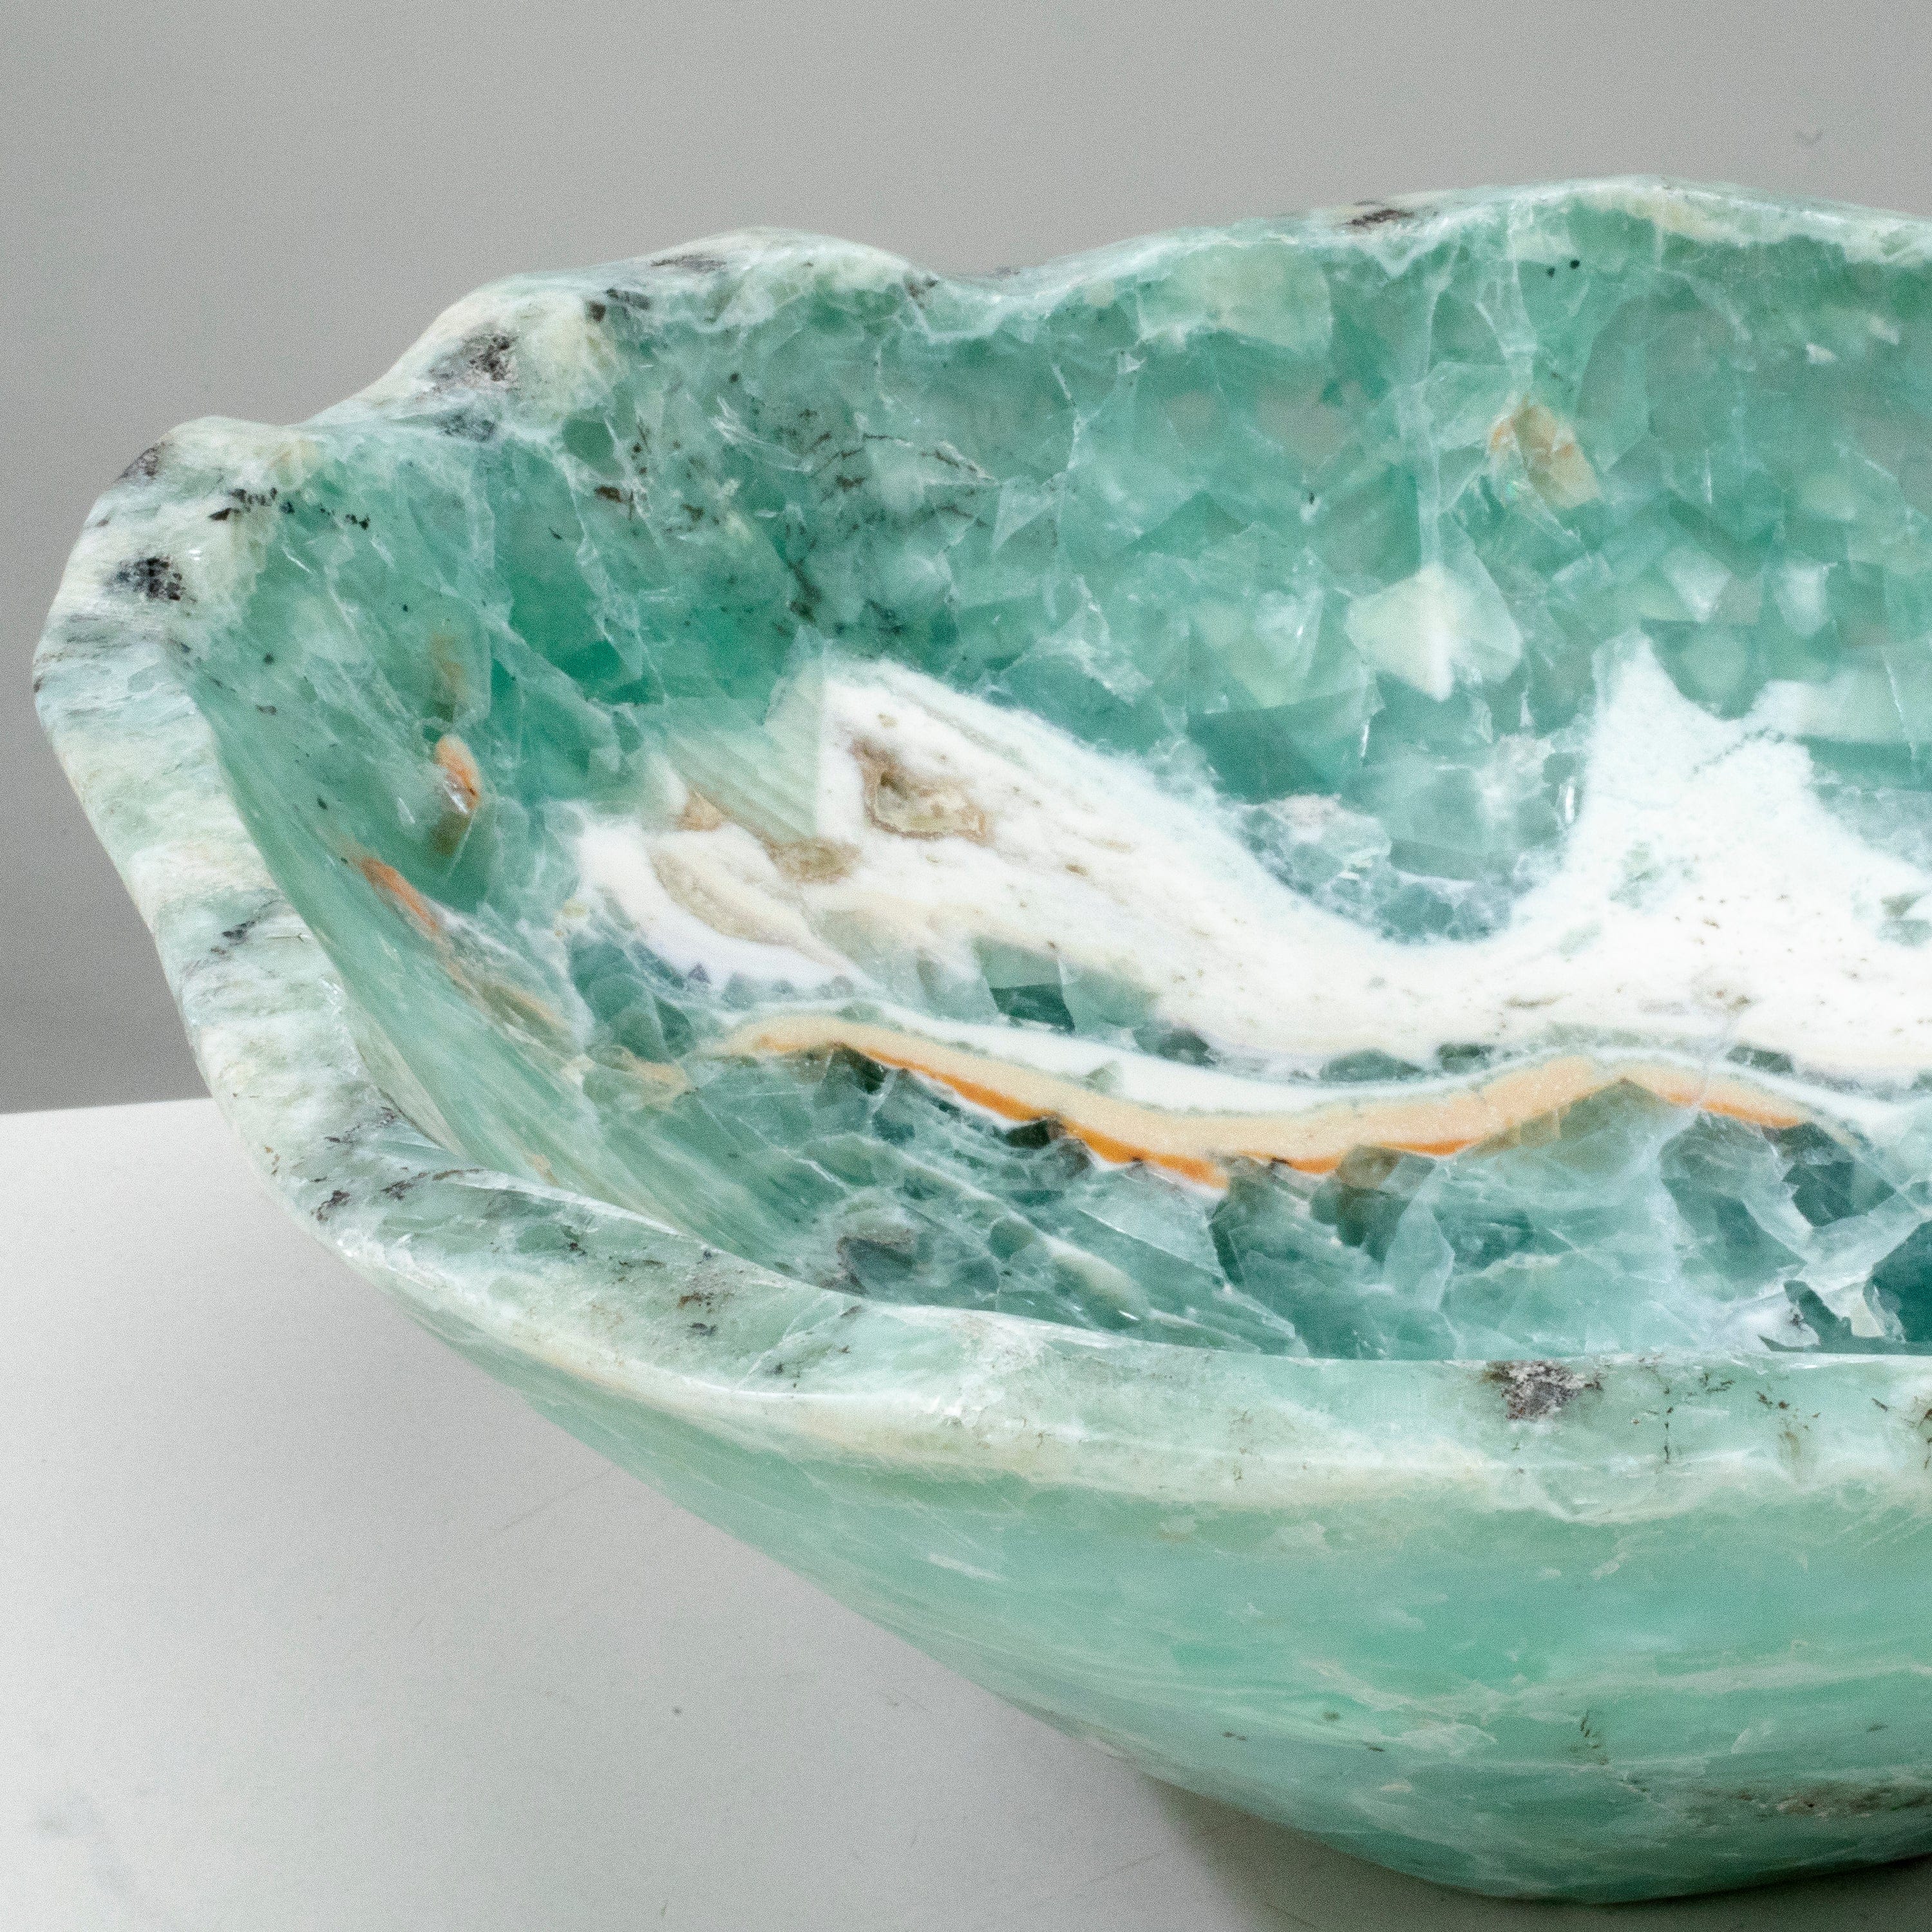 KALIFANO Gemstone Bowls Natural Blue / Green Fluorite Bowl 15" BFL7200.001